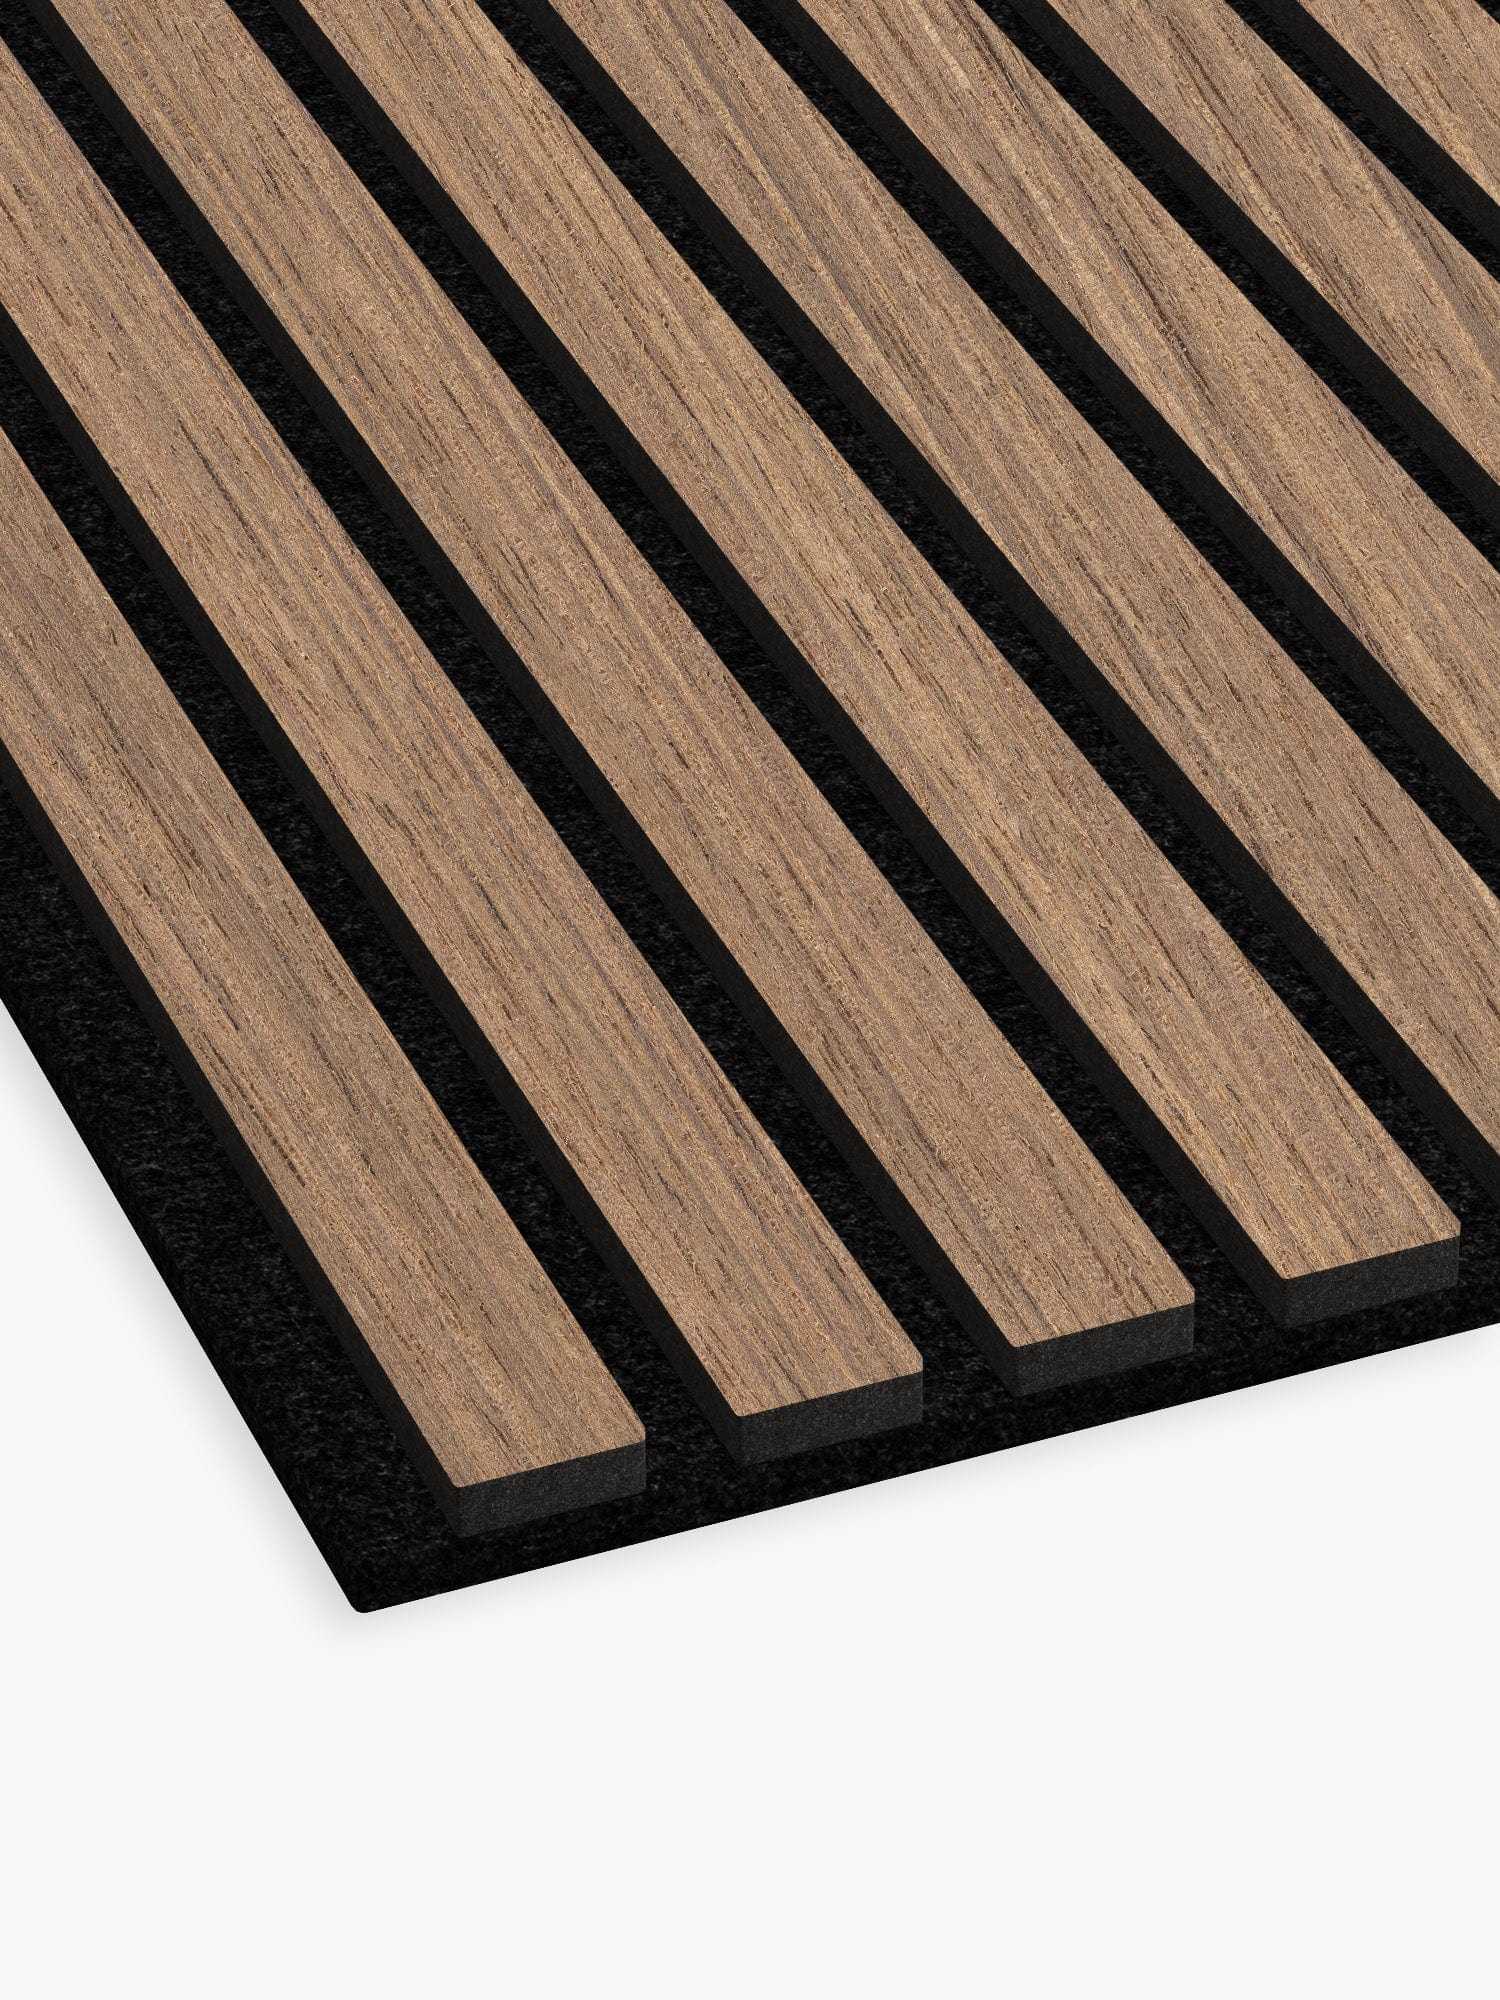 Walnut Acoustic Slat Wood Wall Panels, Premium Quality